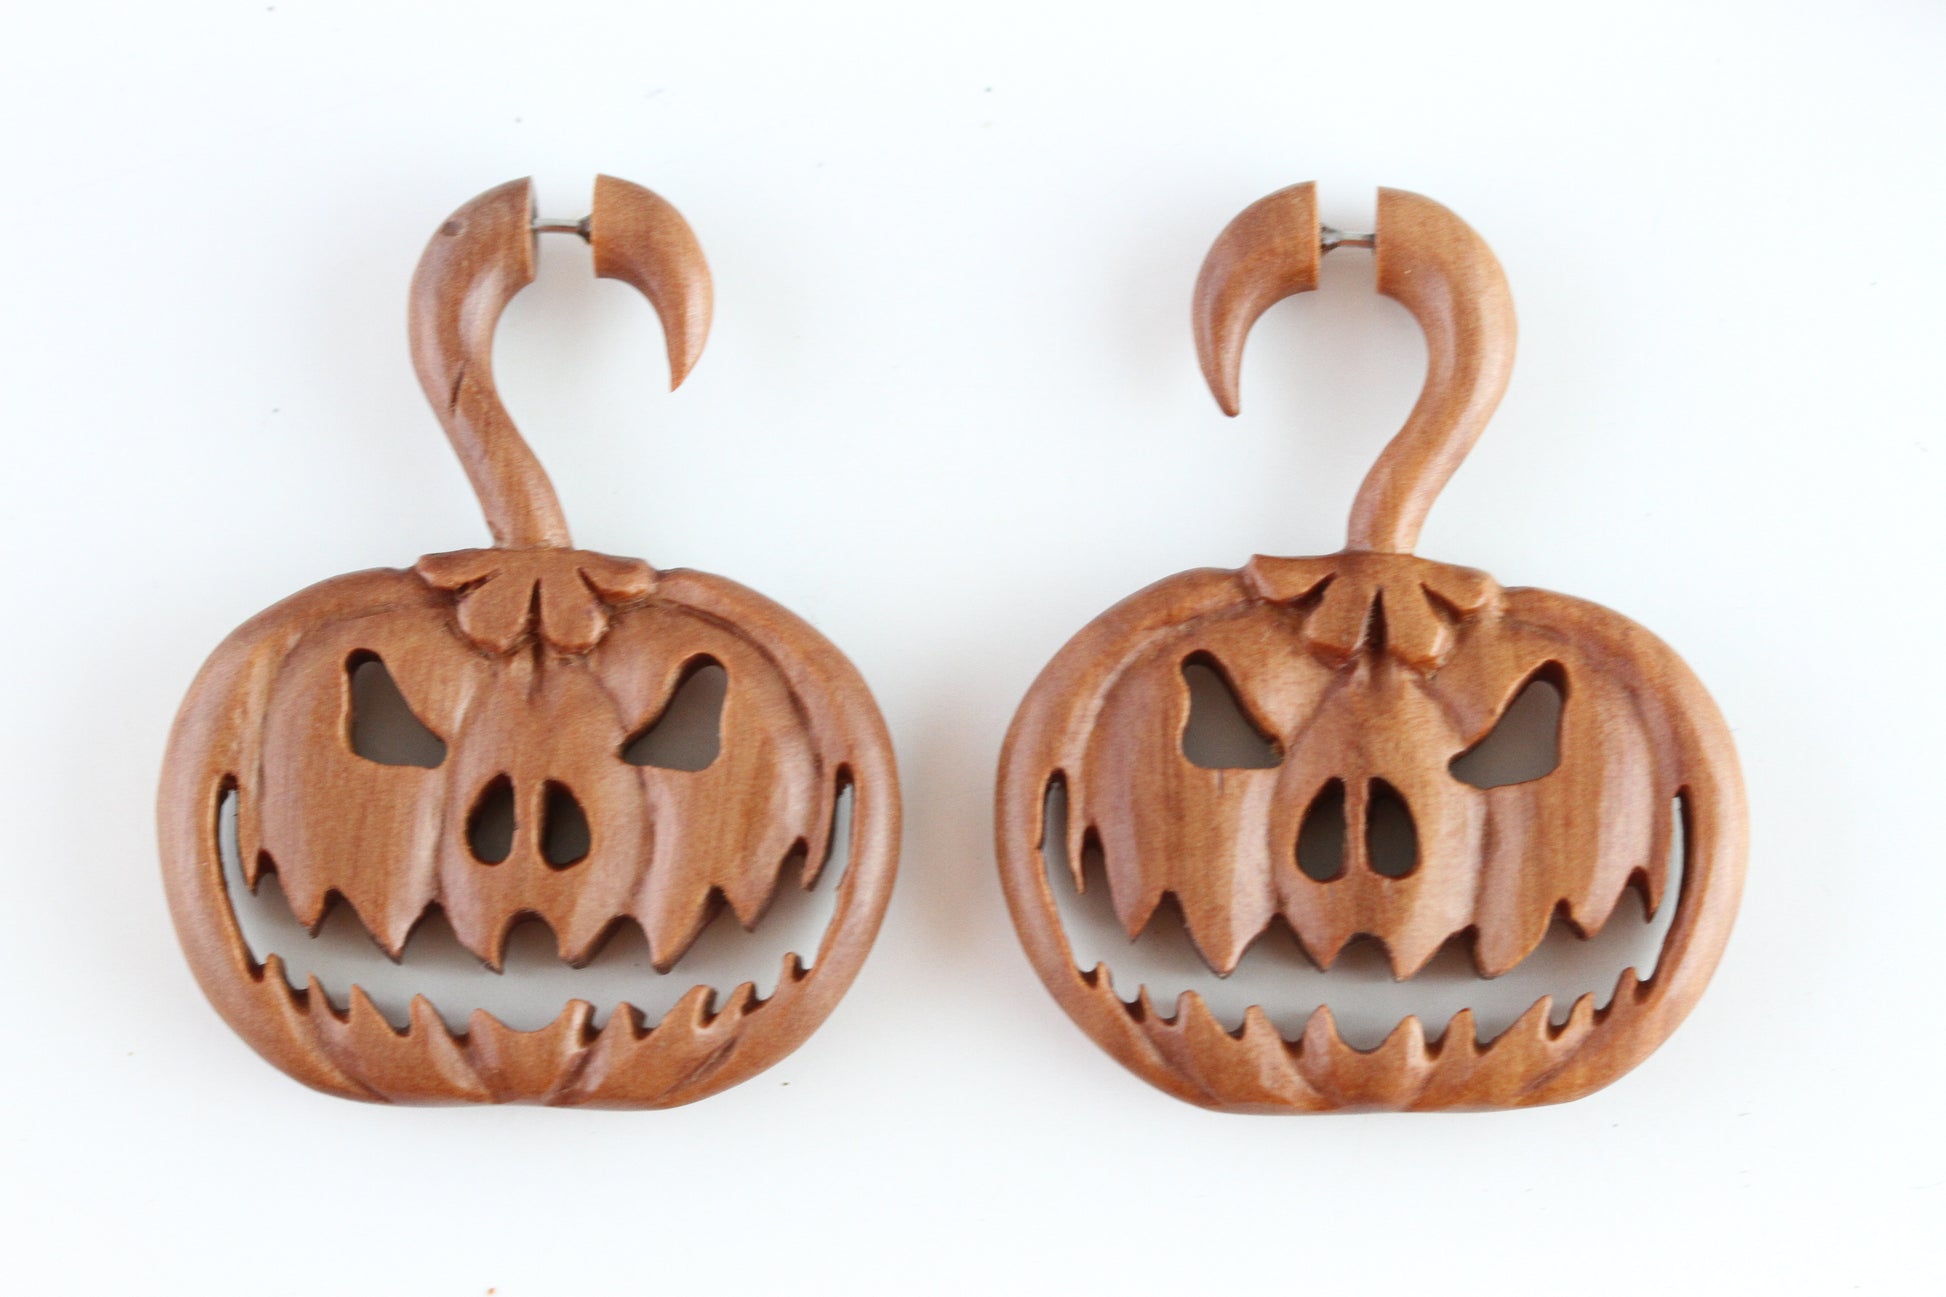 Wood Pumpkin Hanger Plugs - Fake Gauge